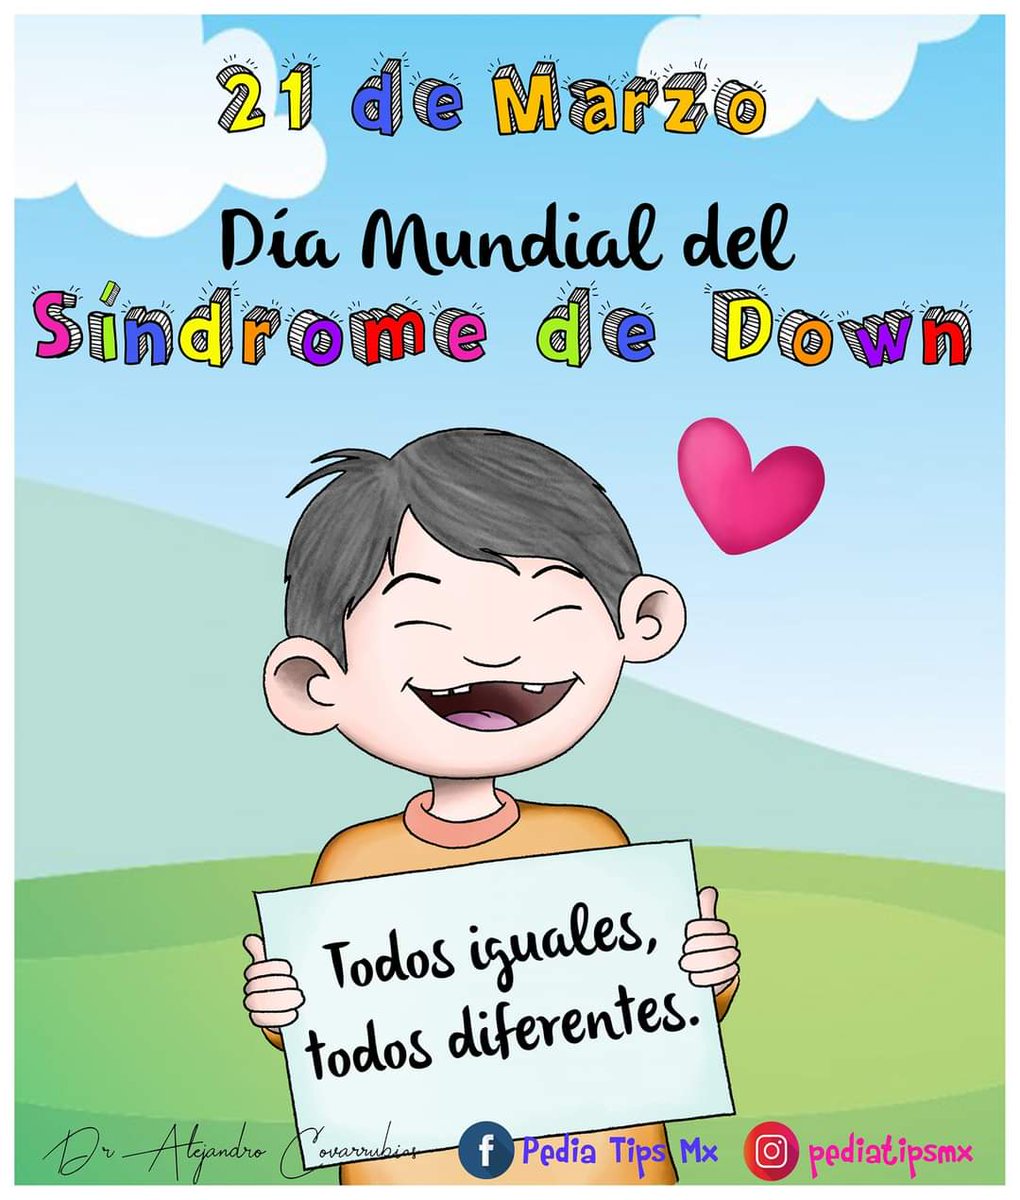 21 de marzo. Día Mundial del Síndrome de Down. 

Apreciemos la belleza de la diversidad.

#DíaMundialDelSíndromeDeDown #CalcetinesDesparejados #TodosIgualesTodosDiferentes